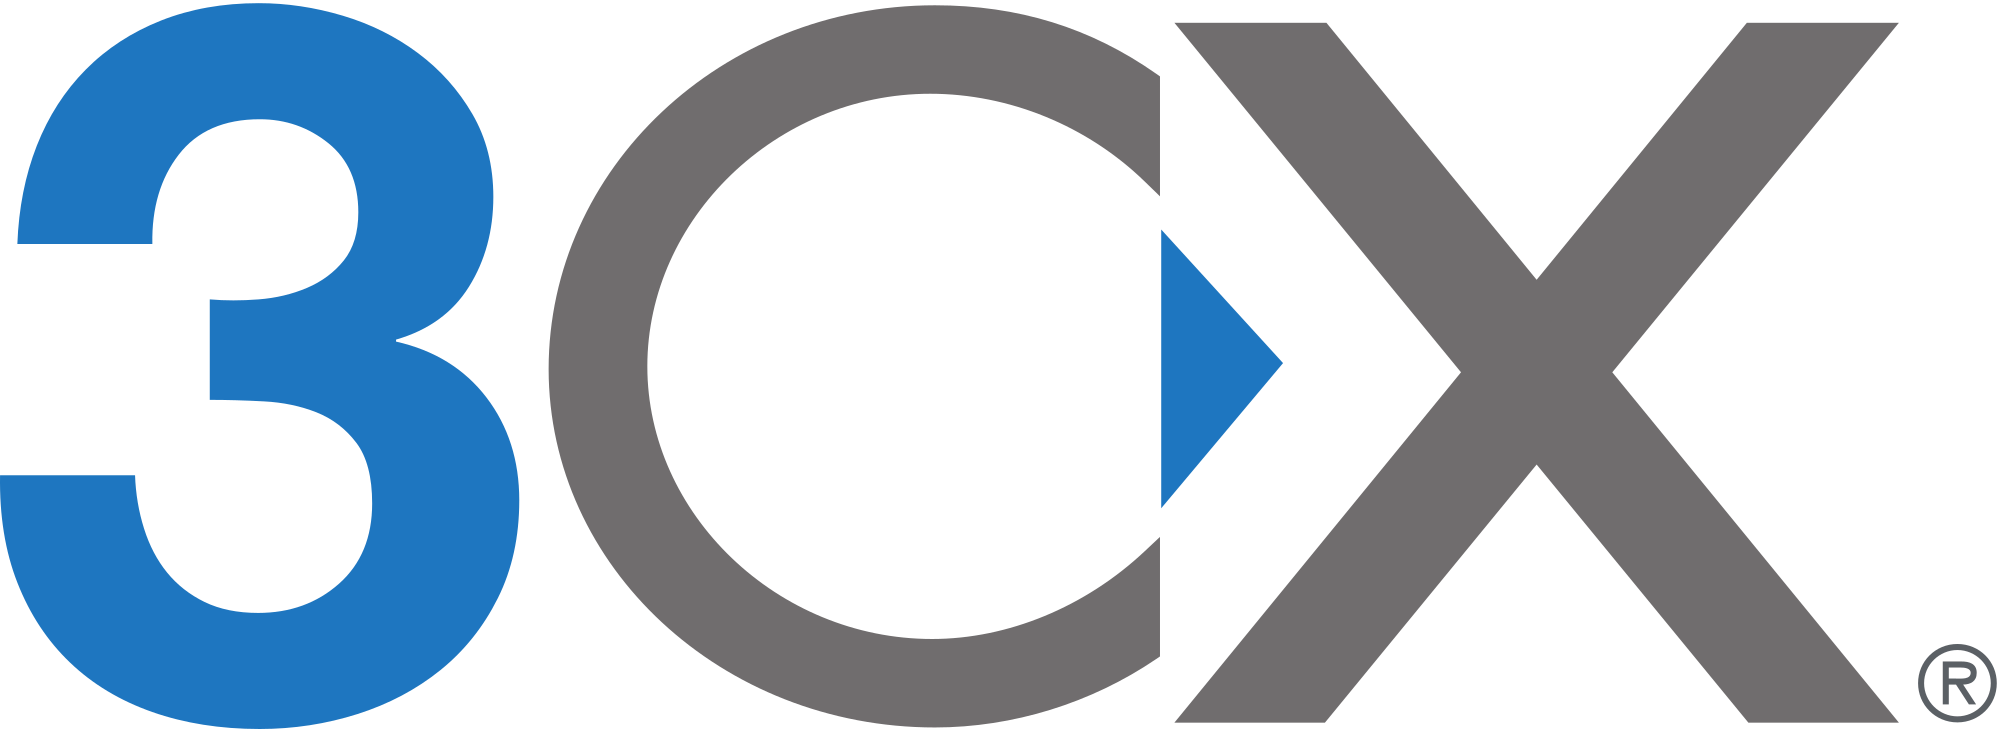 3CX logo.svg